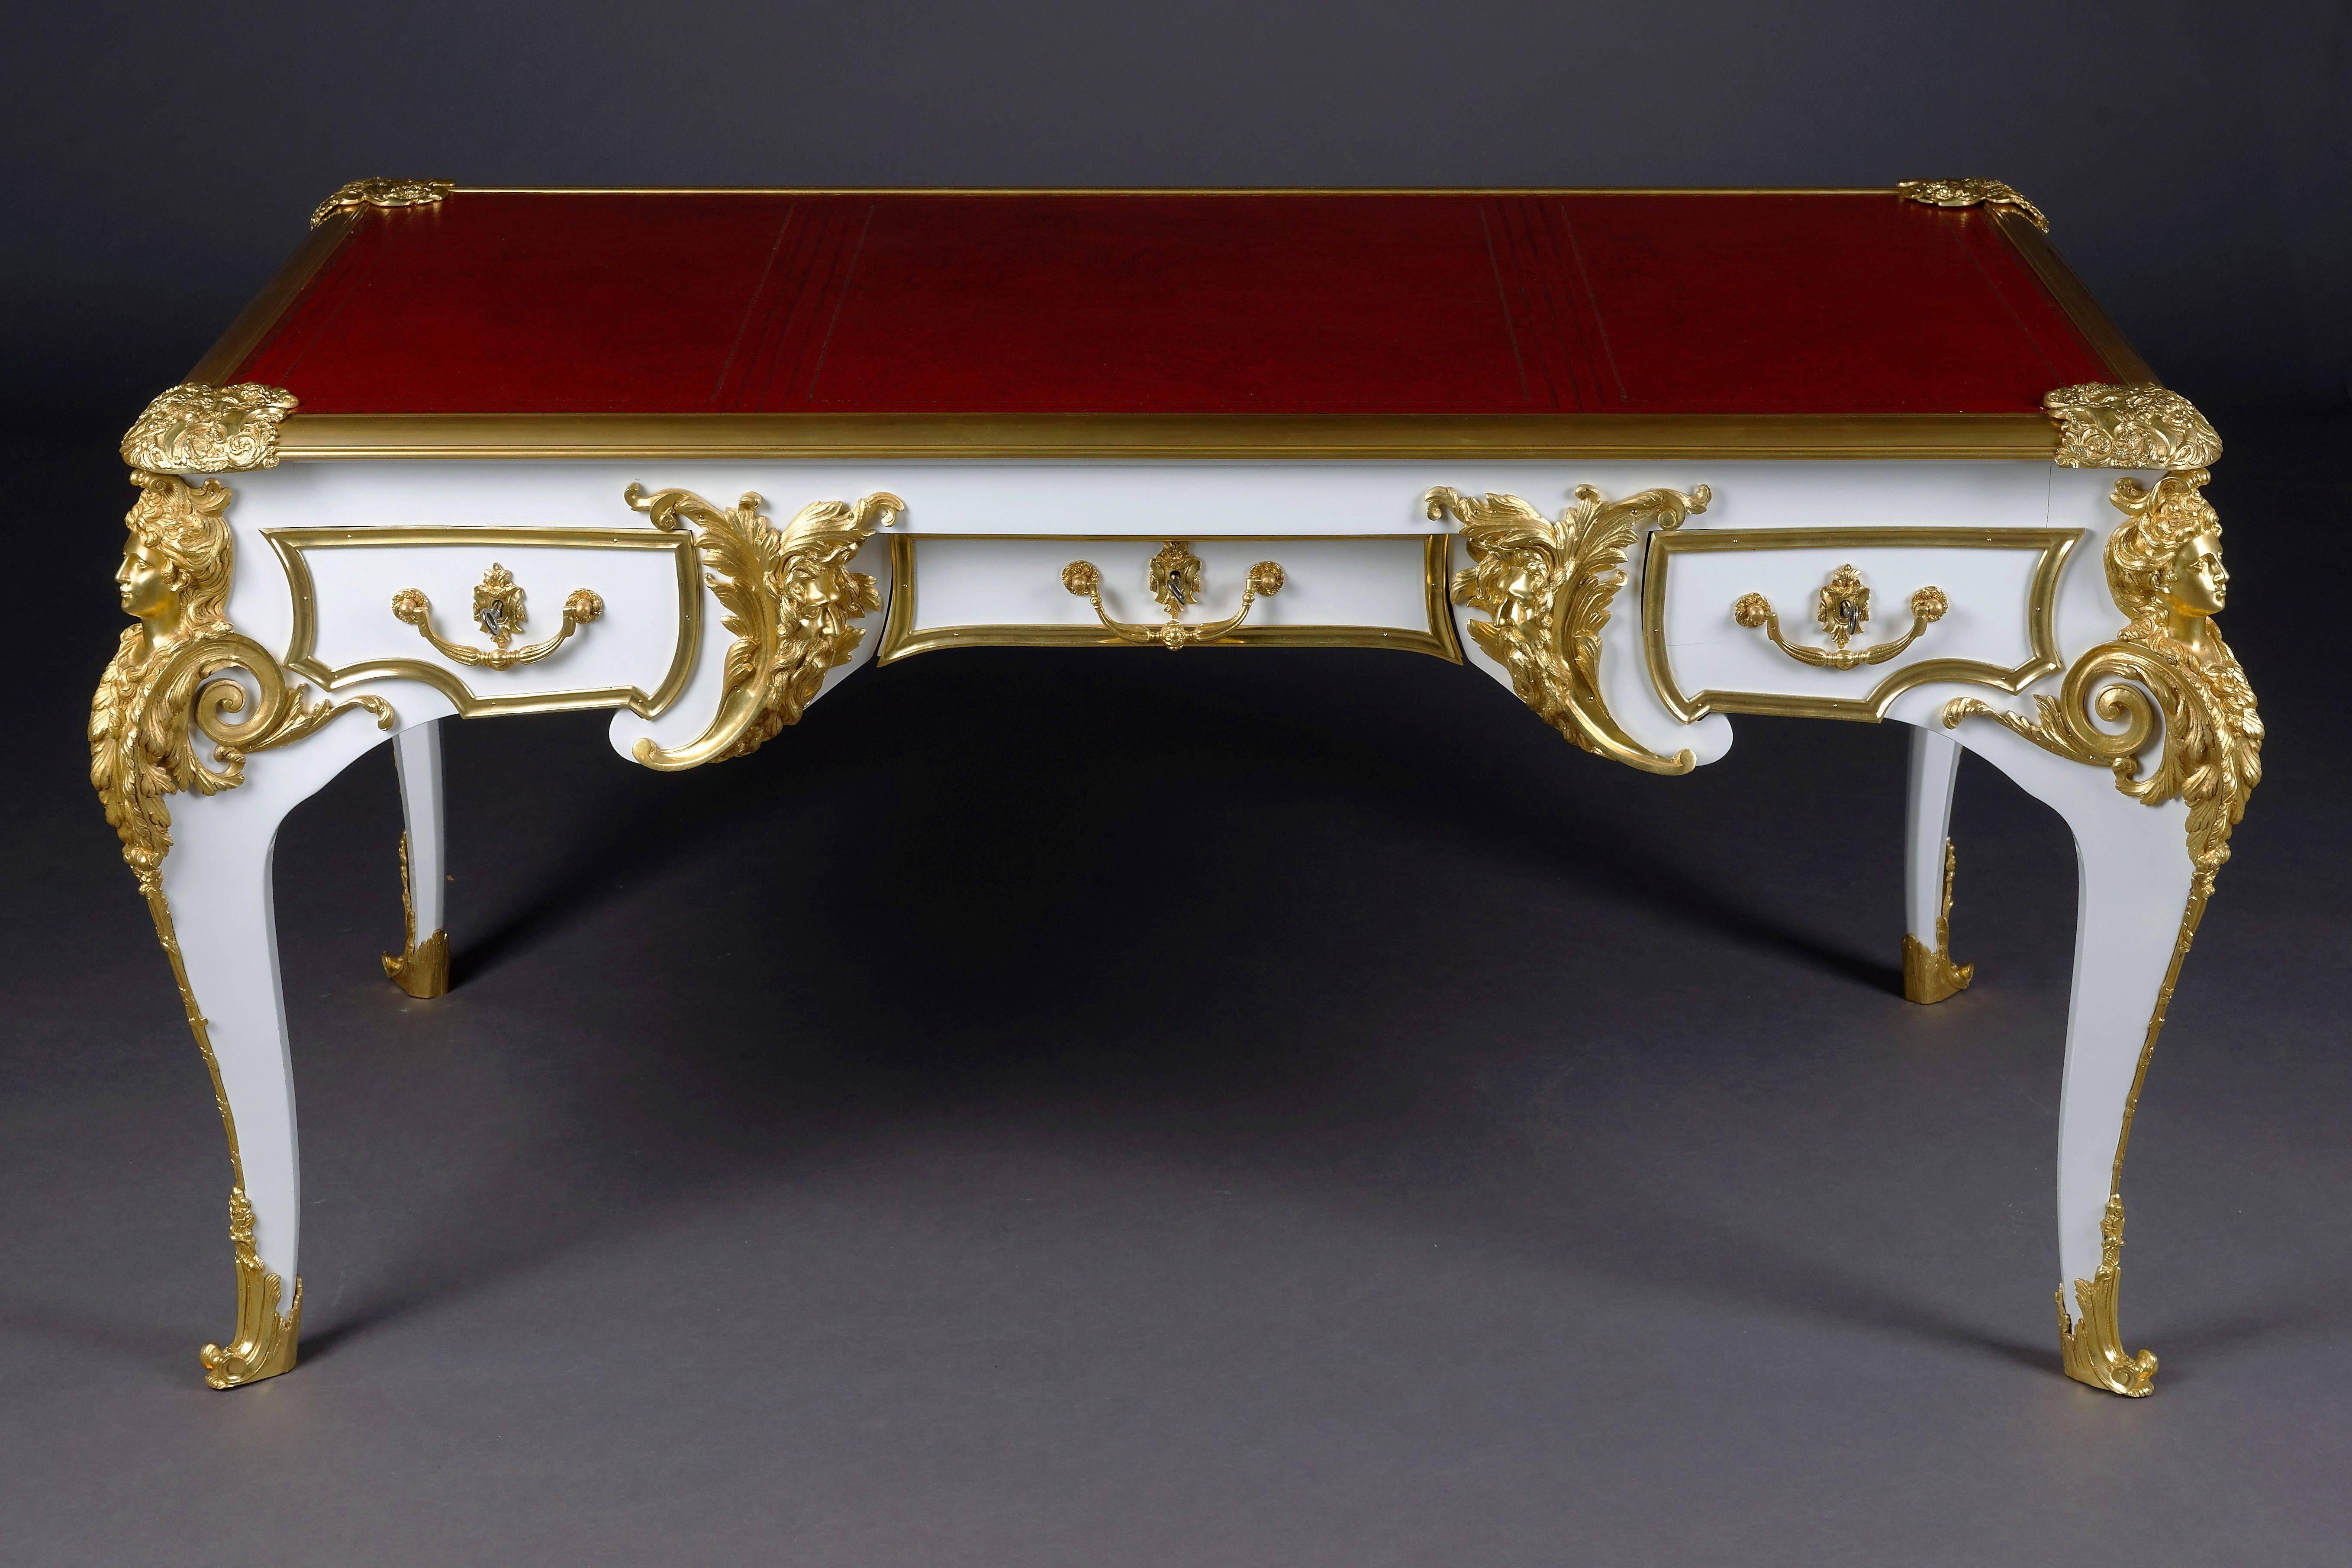 Ce modèle a été construit par Charles Boulle, le plus important et historien de Louis XV.
Placage blanc piano poli sur hêtre et chêne massif. Bronze extrêmement finement ciselé. Plateau profilé légèrement en saillie et insert en cuir gaufré à l'or,